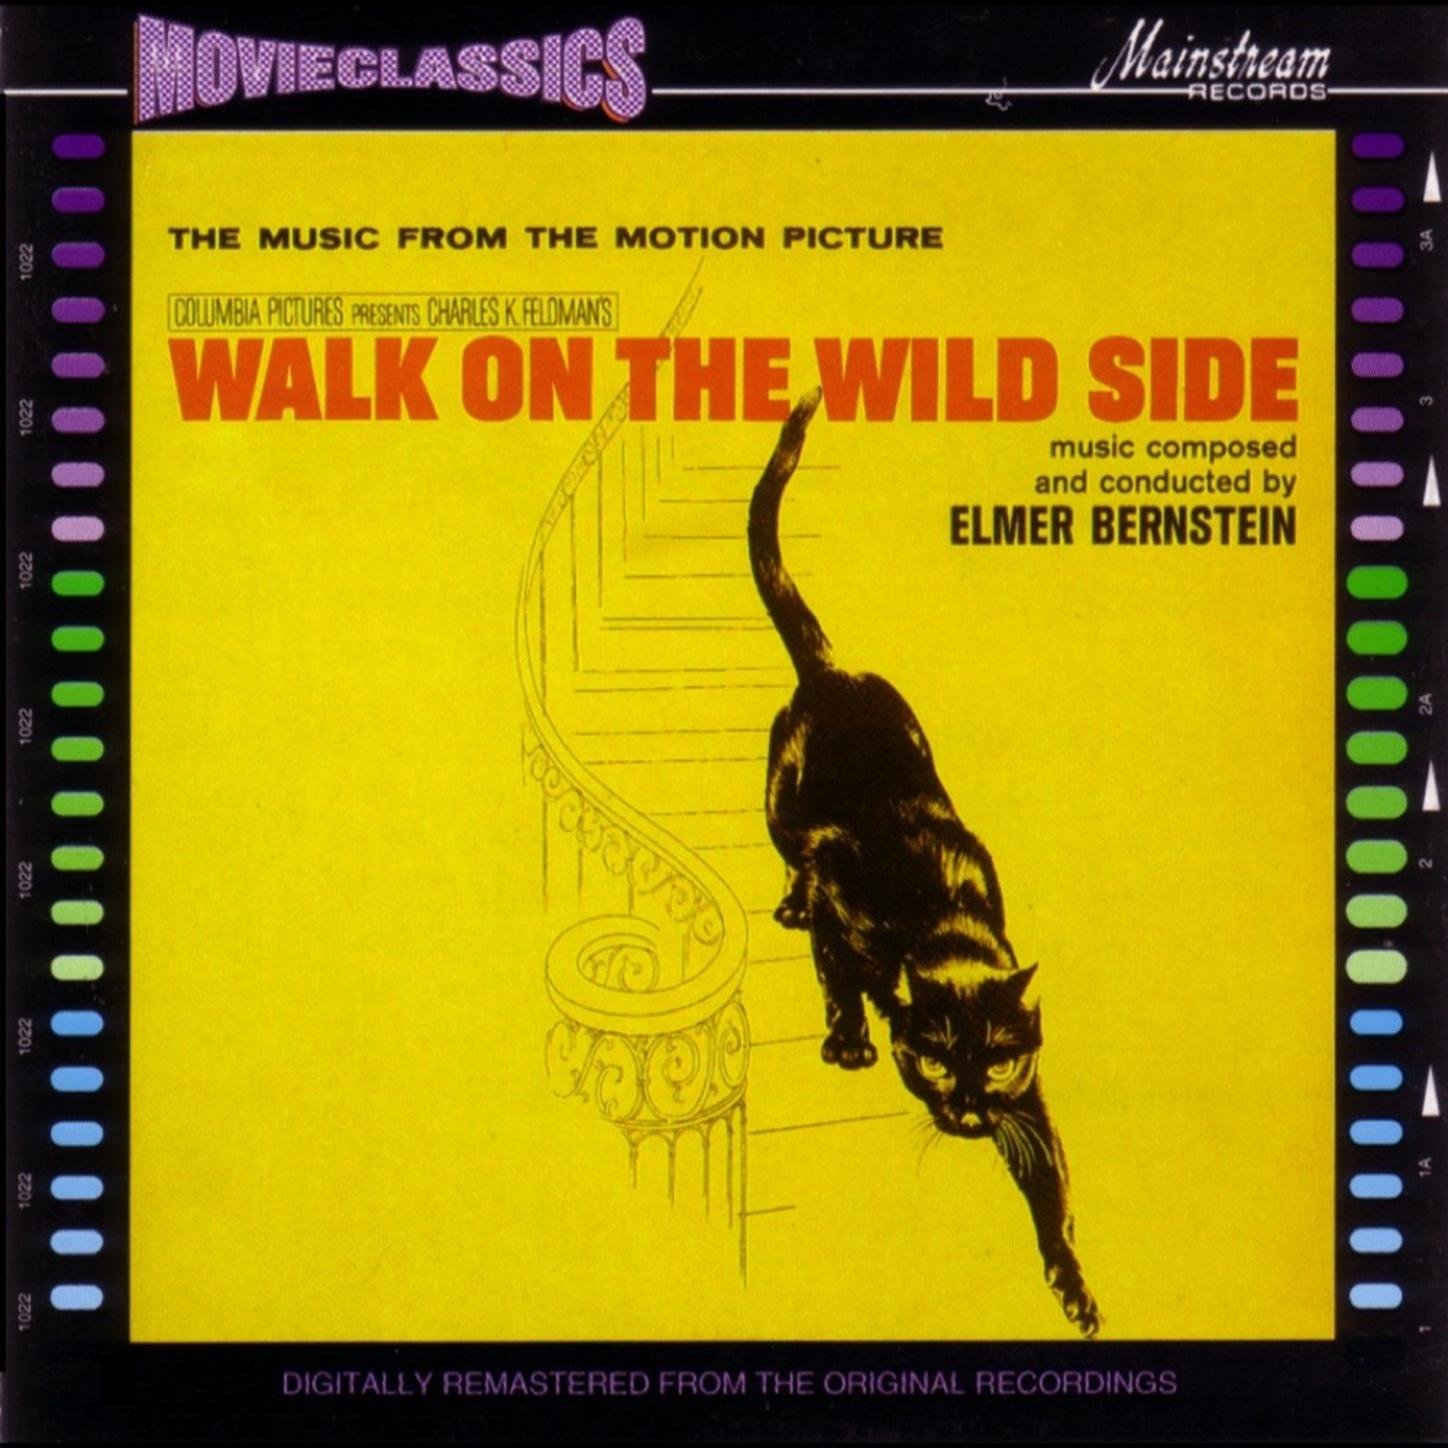 Song lyrics to Walk on the Wild Side (1962), written by Mack David, music was by Elmer Bernstein.